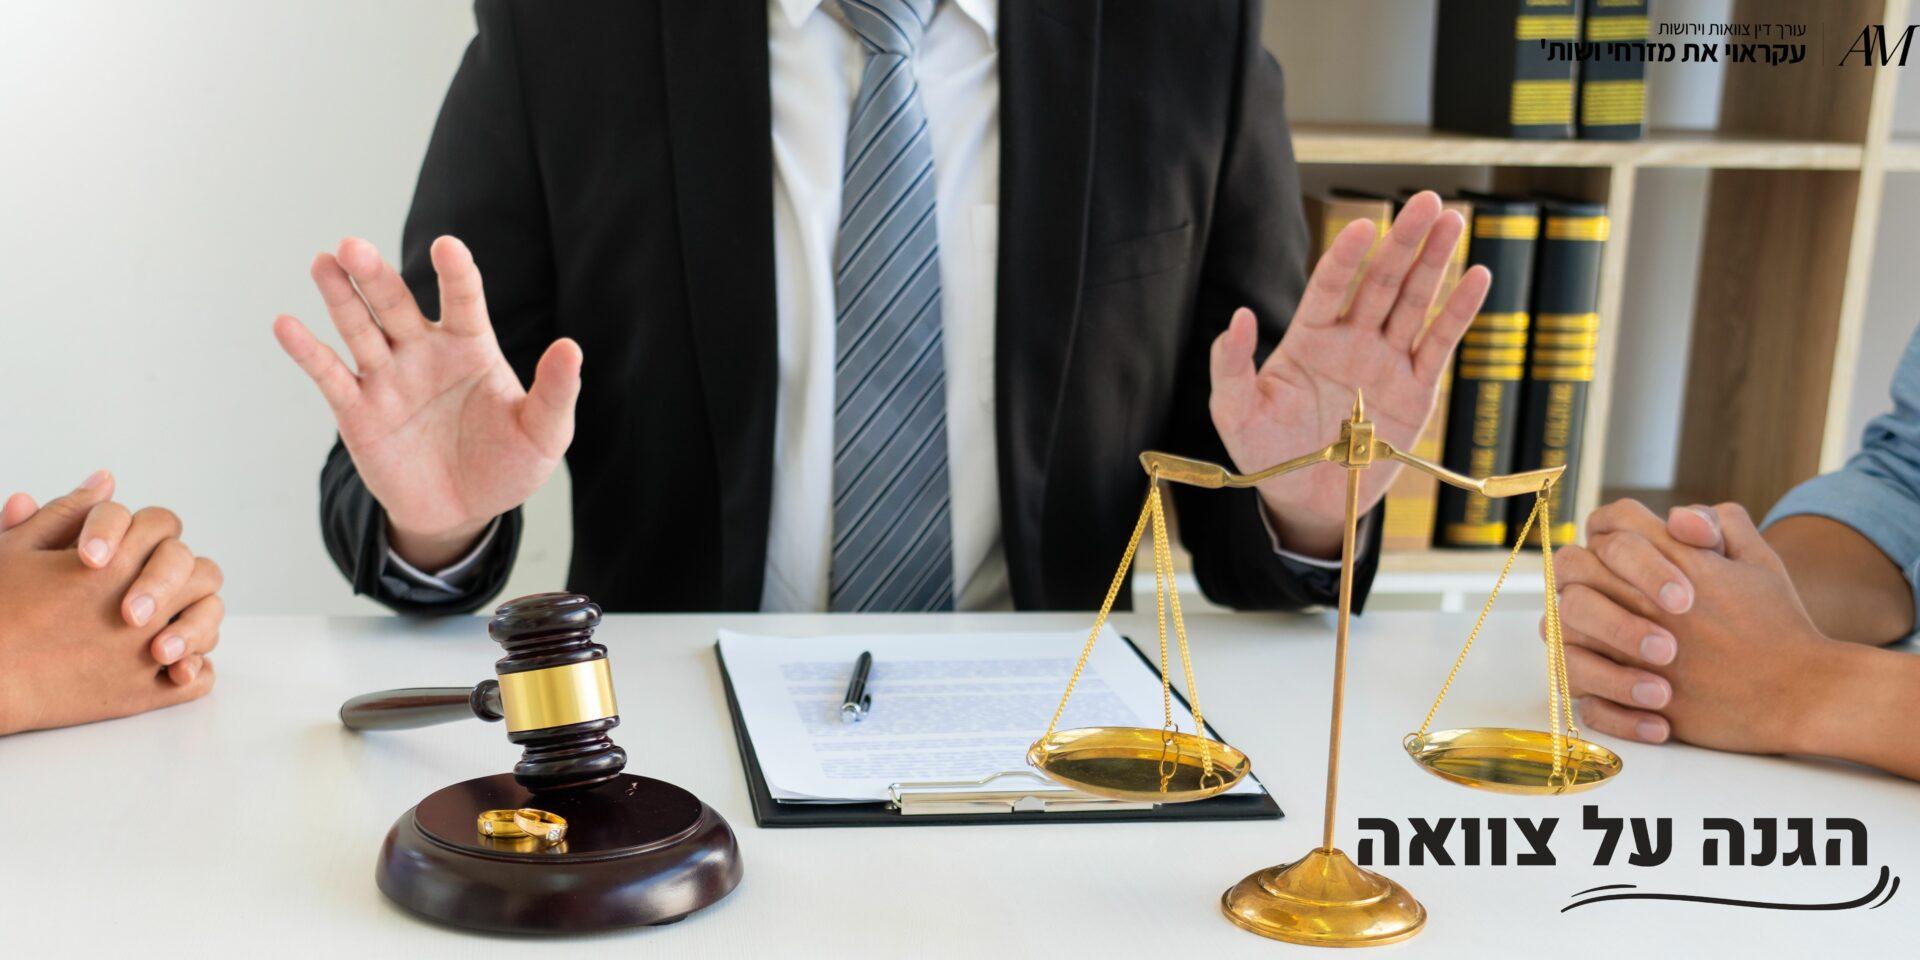 הגנה על צוואה - עורכי דין עקראוי את מזרחי ושות'